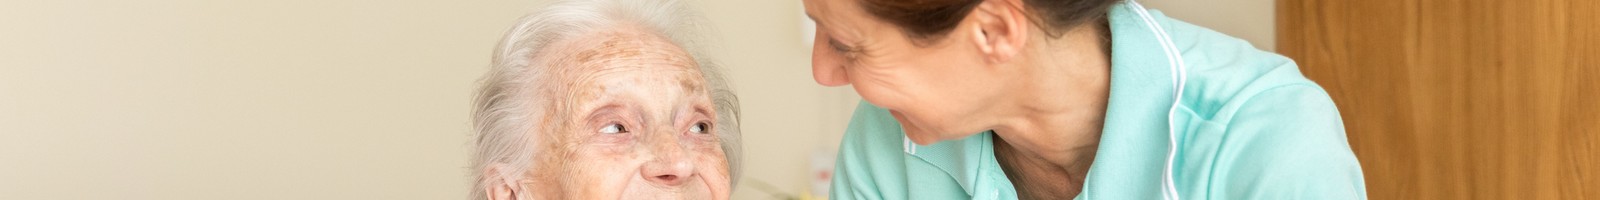 Une nouvelle étude sur la maladie d’Alzheimer indique des pistes de traitement à explorer